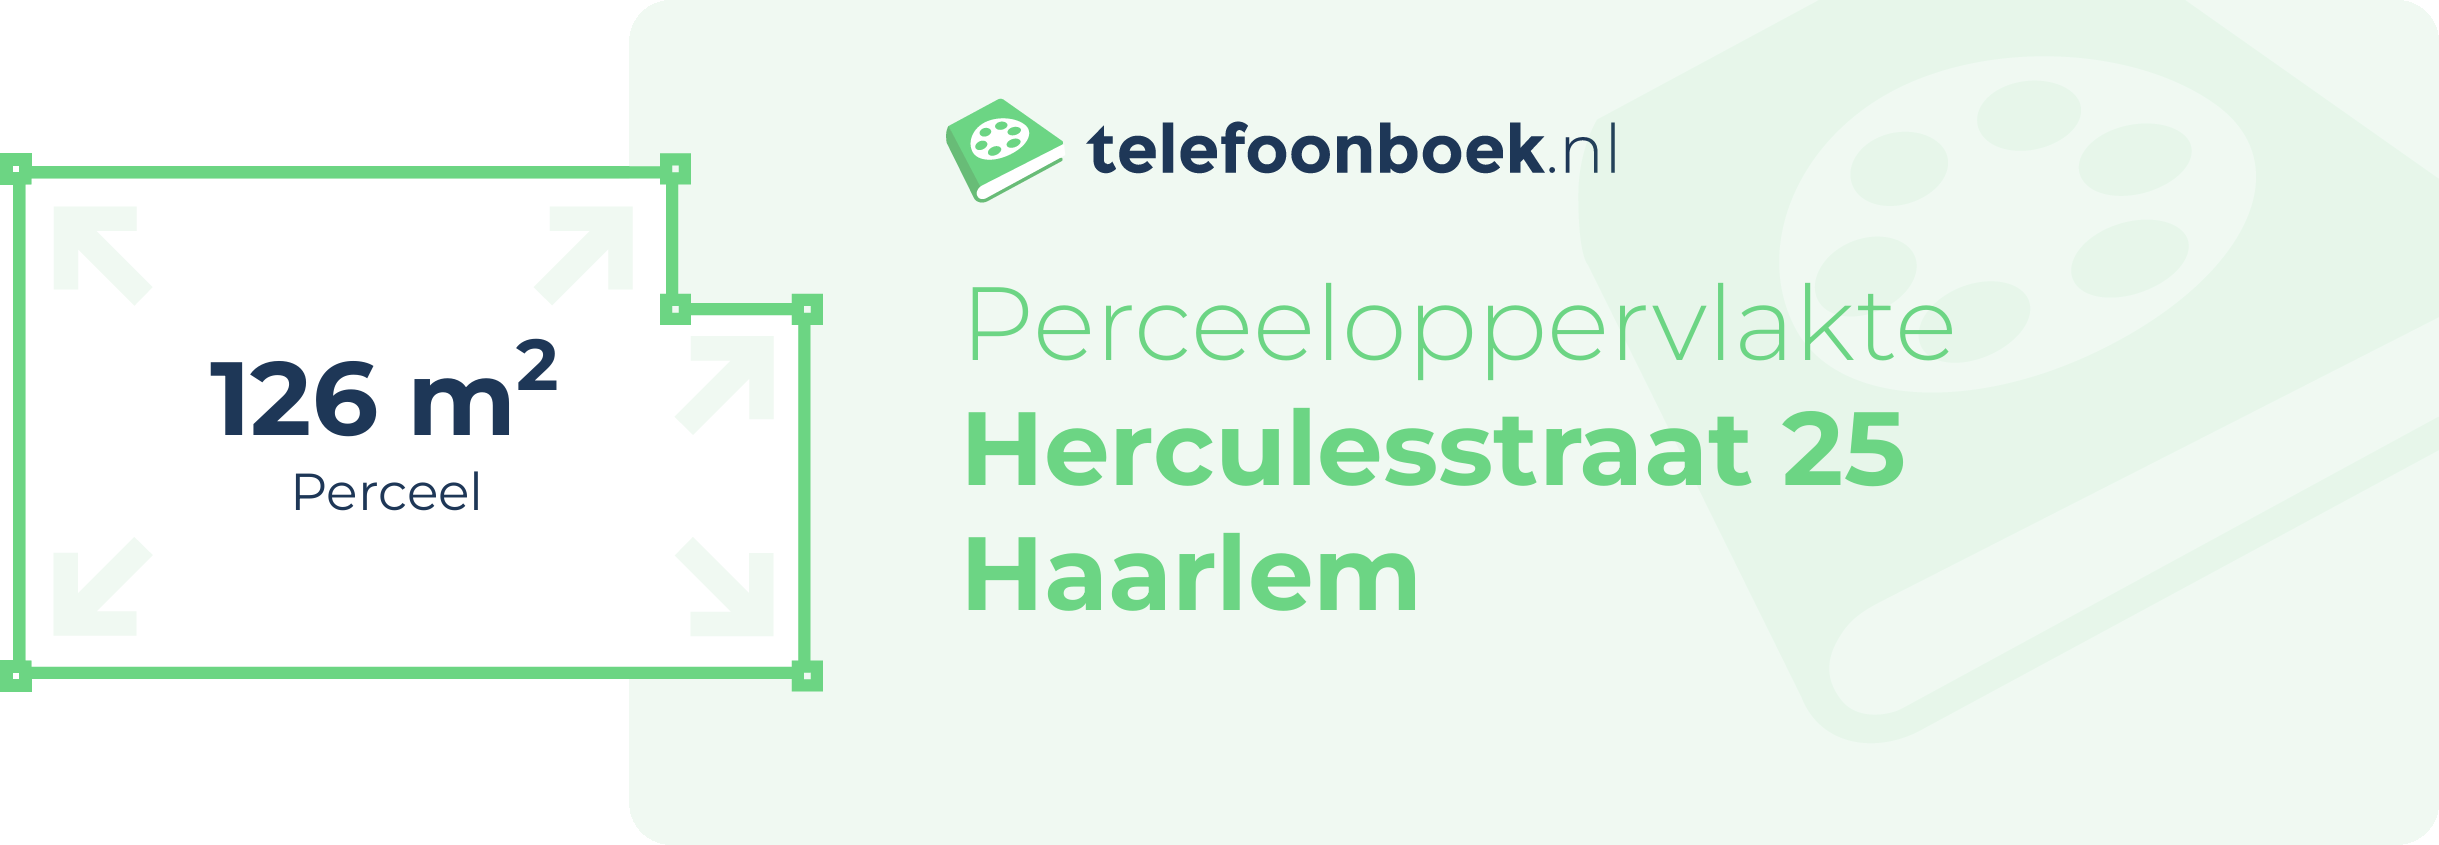 Perceeloppervlakte Herculesstraat 25 Haarlem